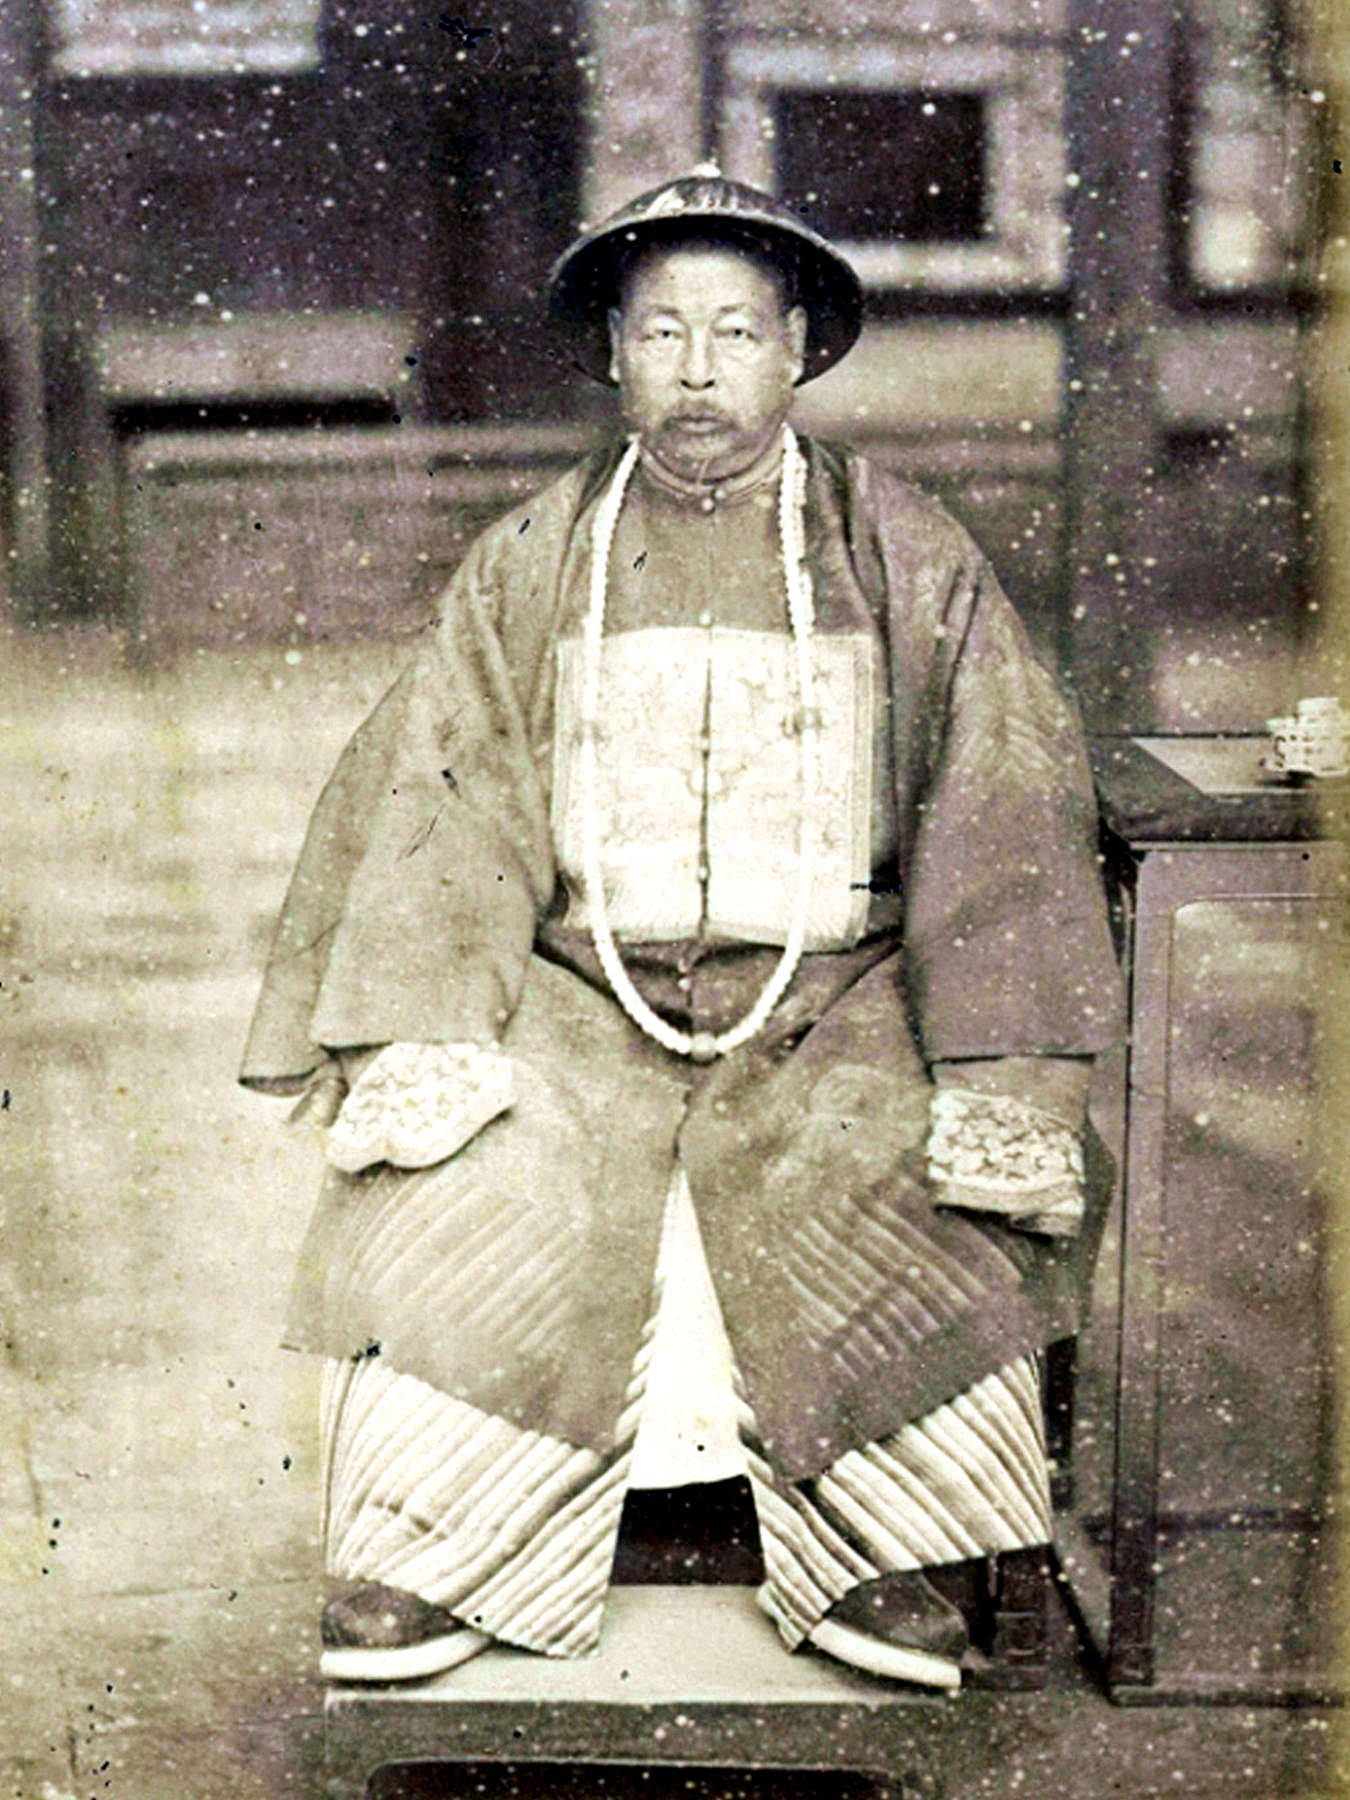 清朝历史名人的真实照片,与影视剧差别很大,图8是乾隆真实相貌